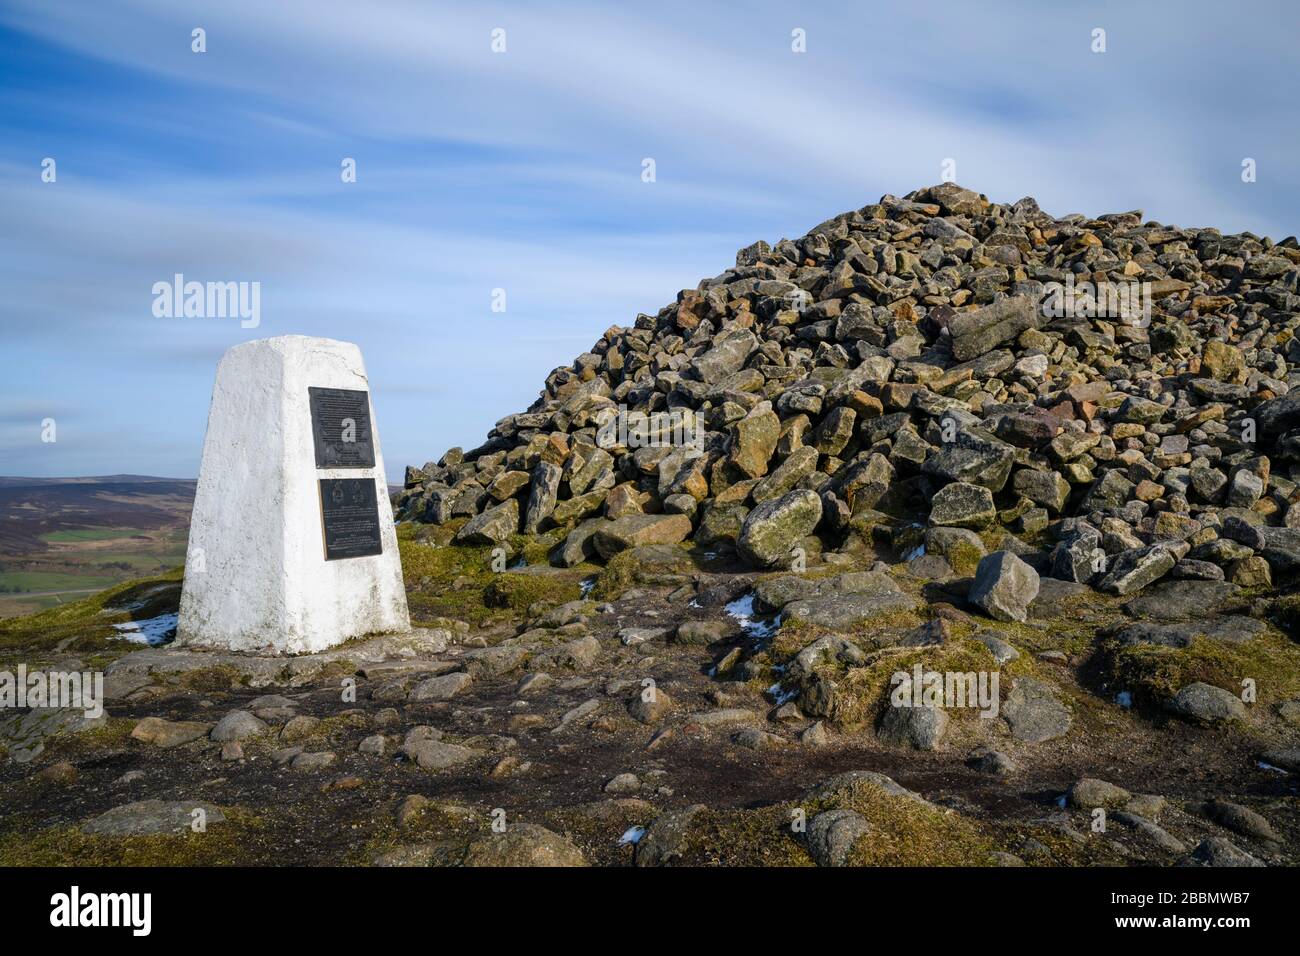 Alta cumbre de Beamsley Beacon (punto de trig, placas conmemorativas, rocas históricas de cairn, colinas altas, vista rural escénica) - North Yorkshire, Inglaterra, Reino Unido. Foto de stock